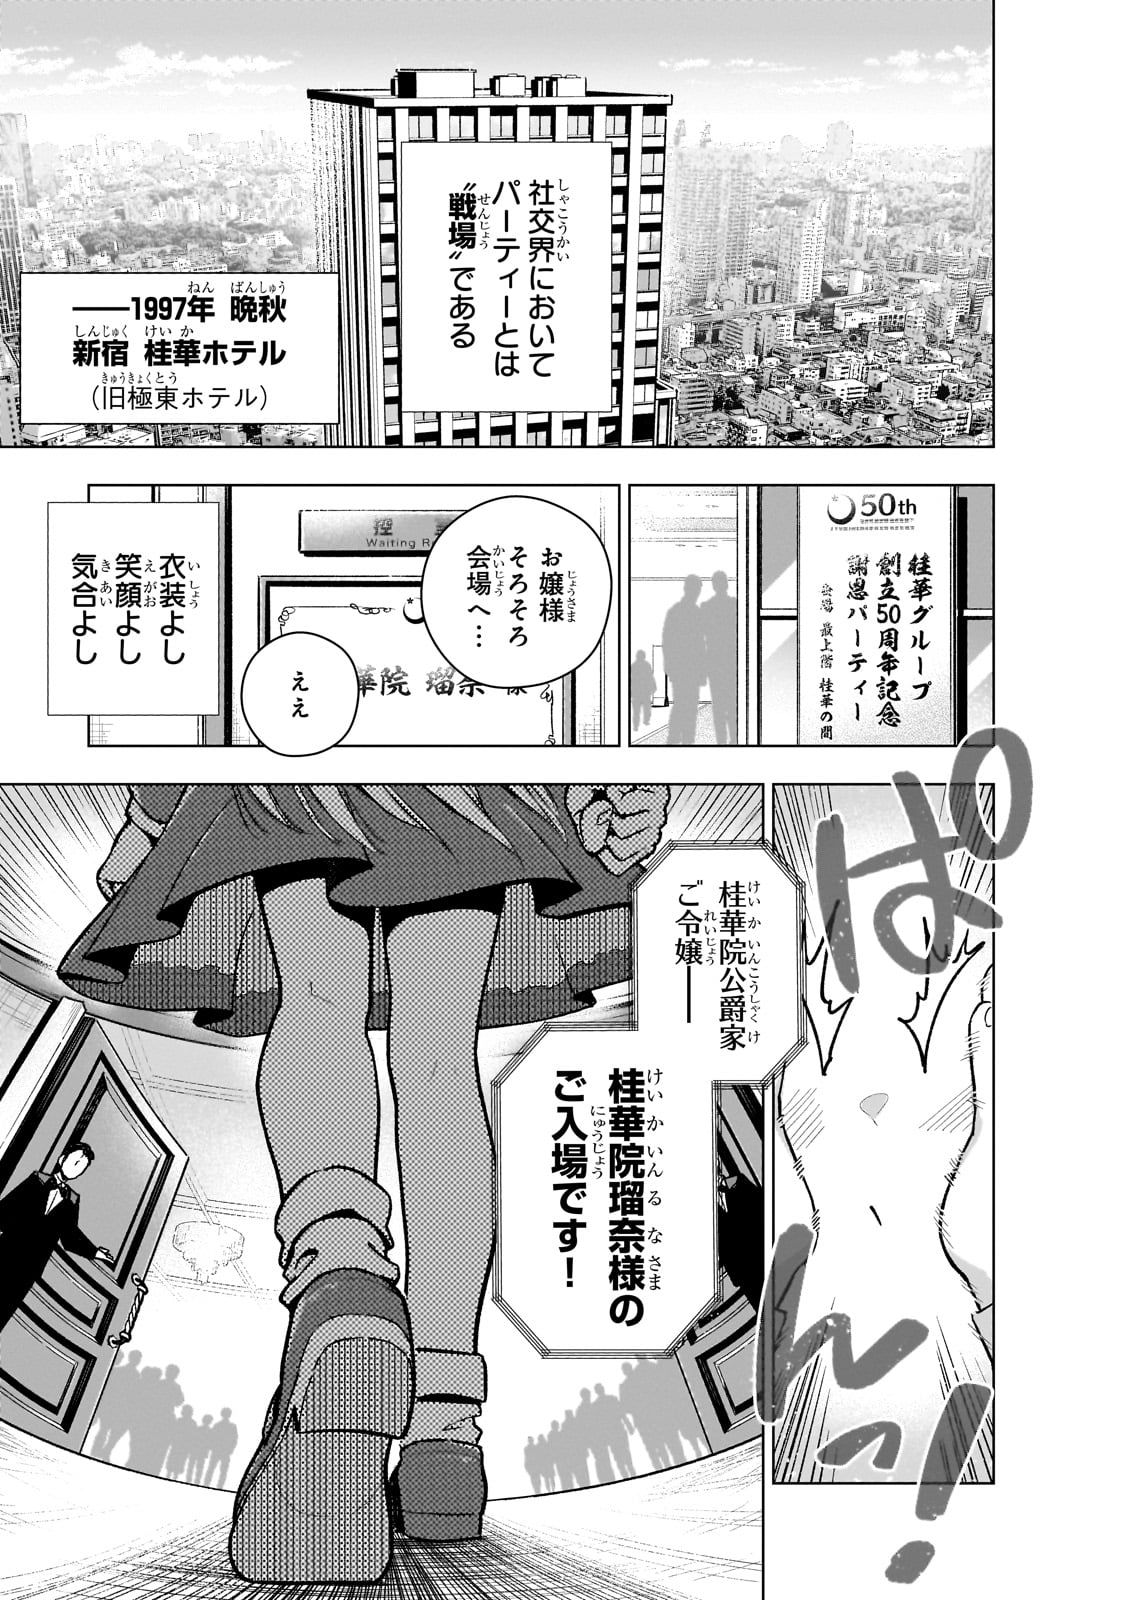 Gendai Shakai de Otome Game no Akuyaku Reijou wo suru no wa Chotto Taihen - Chapter 12 - Page 1